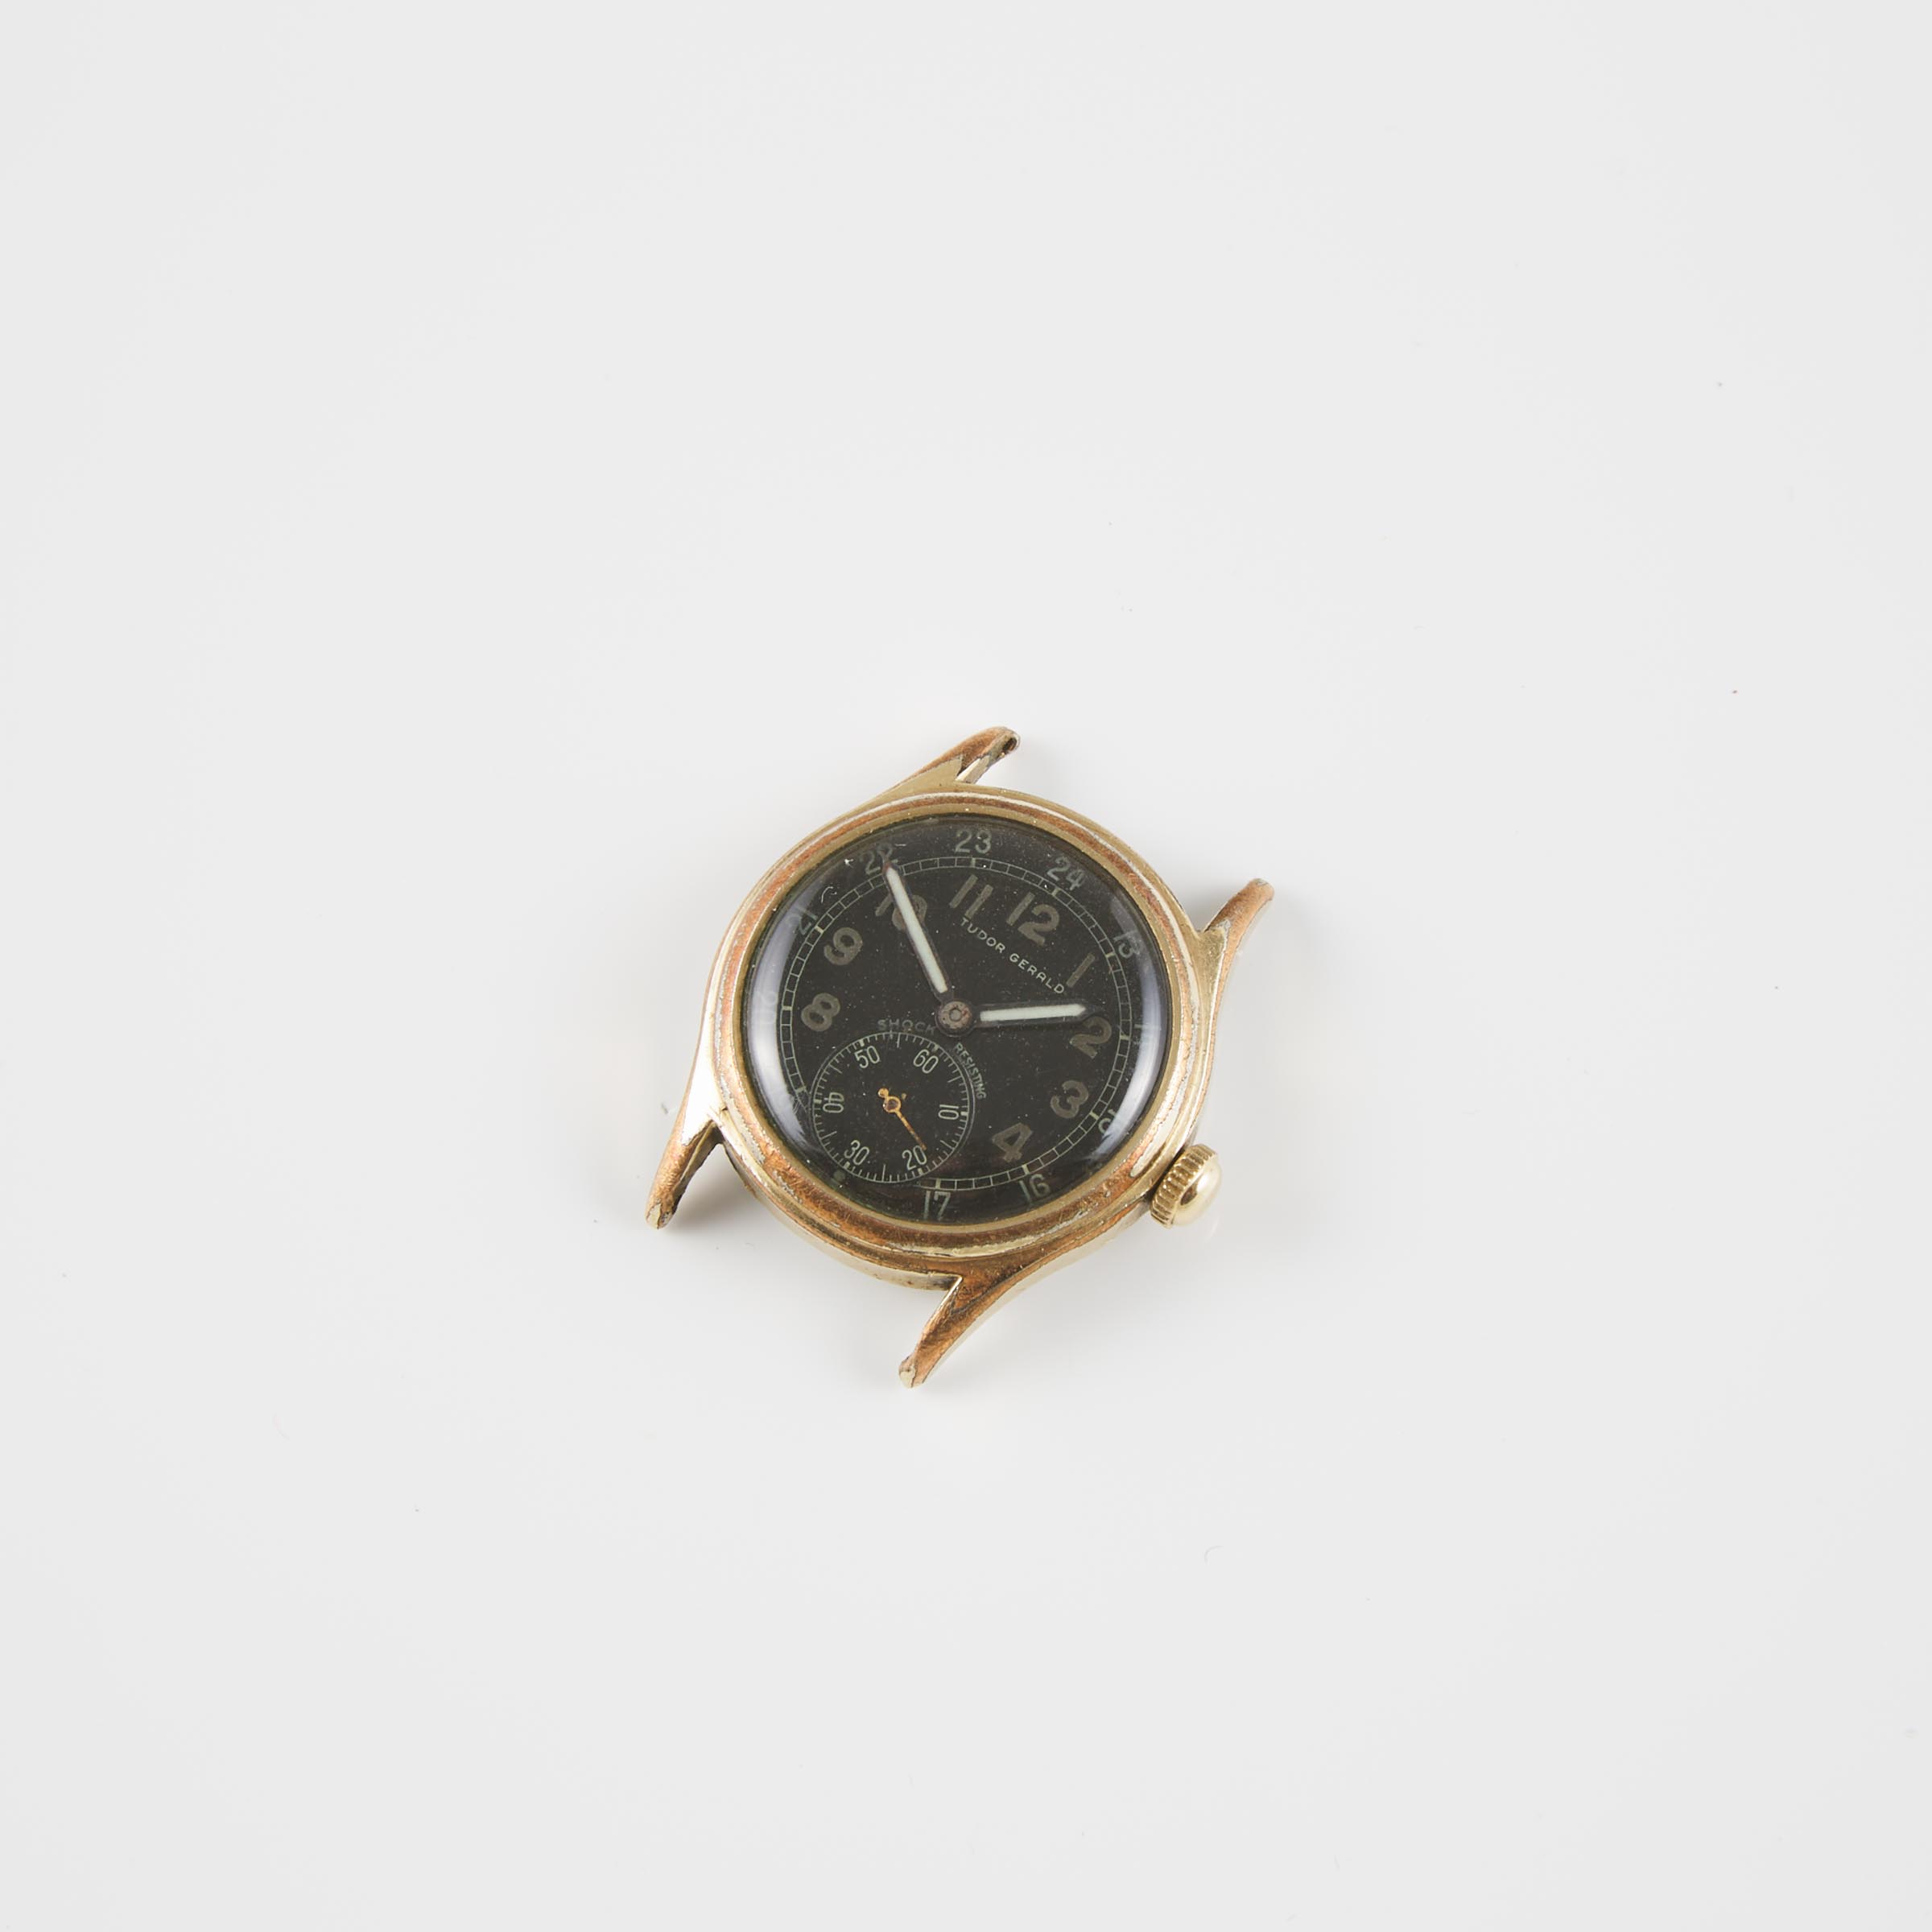 Tudor 'Gerald' Wristwatch